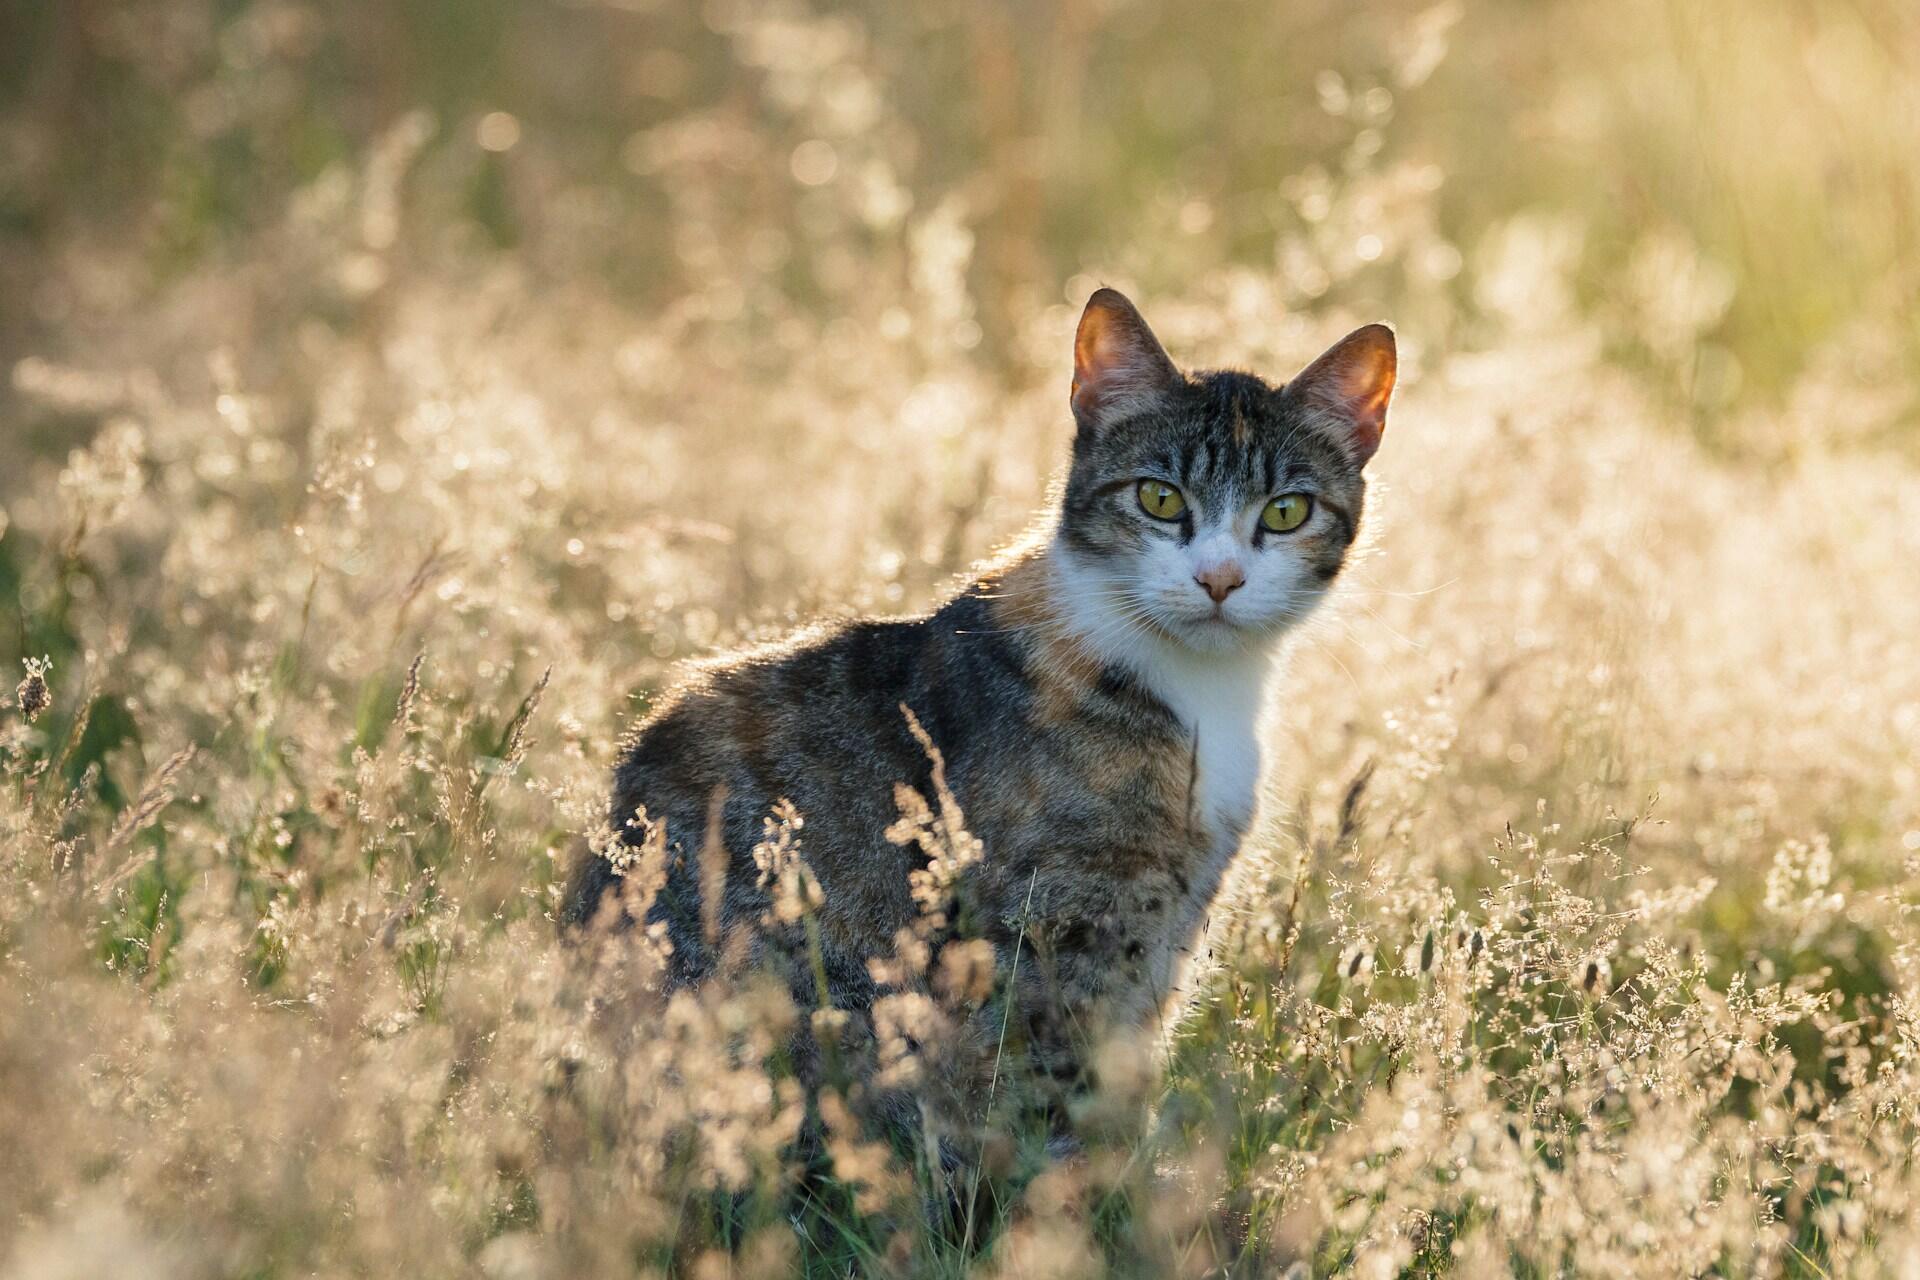 A cat sitting in a grassy field